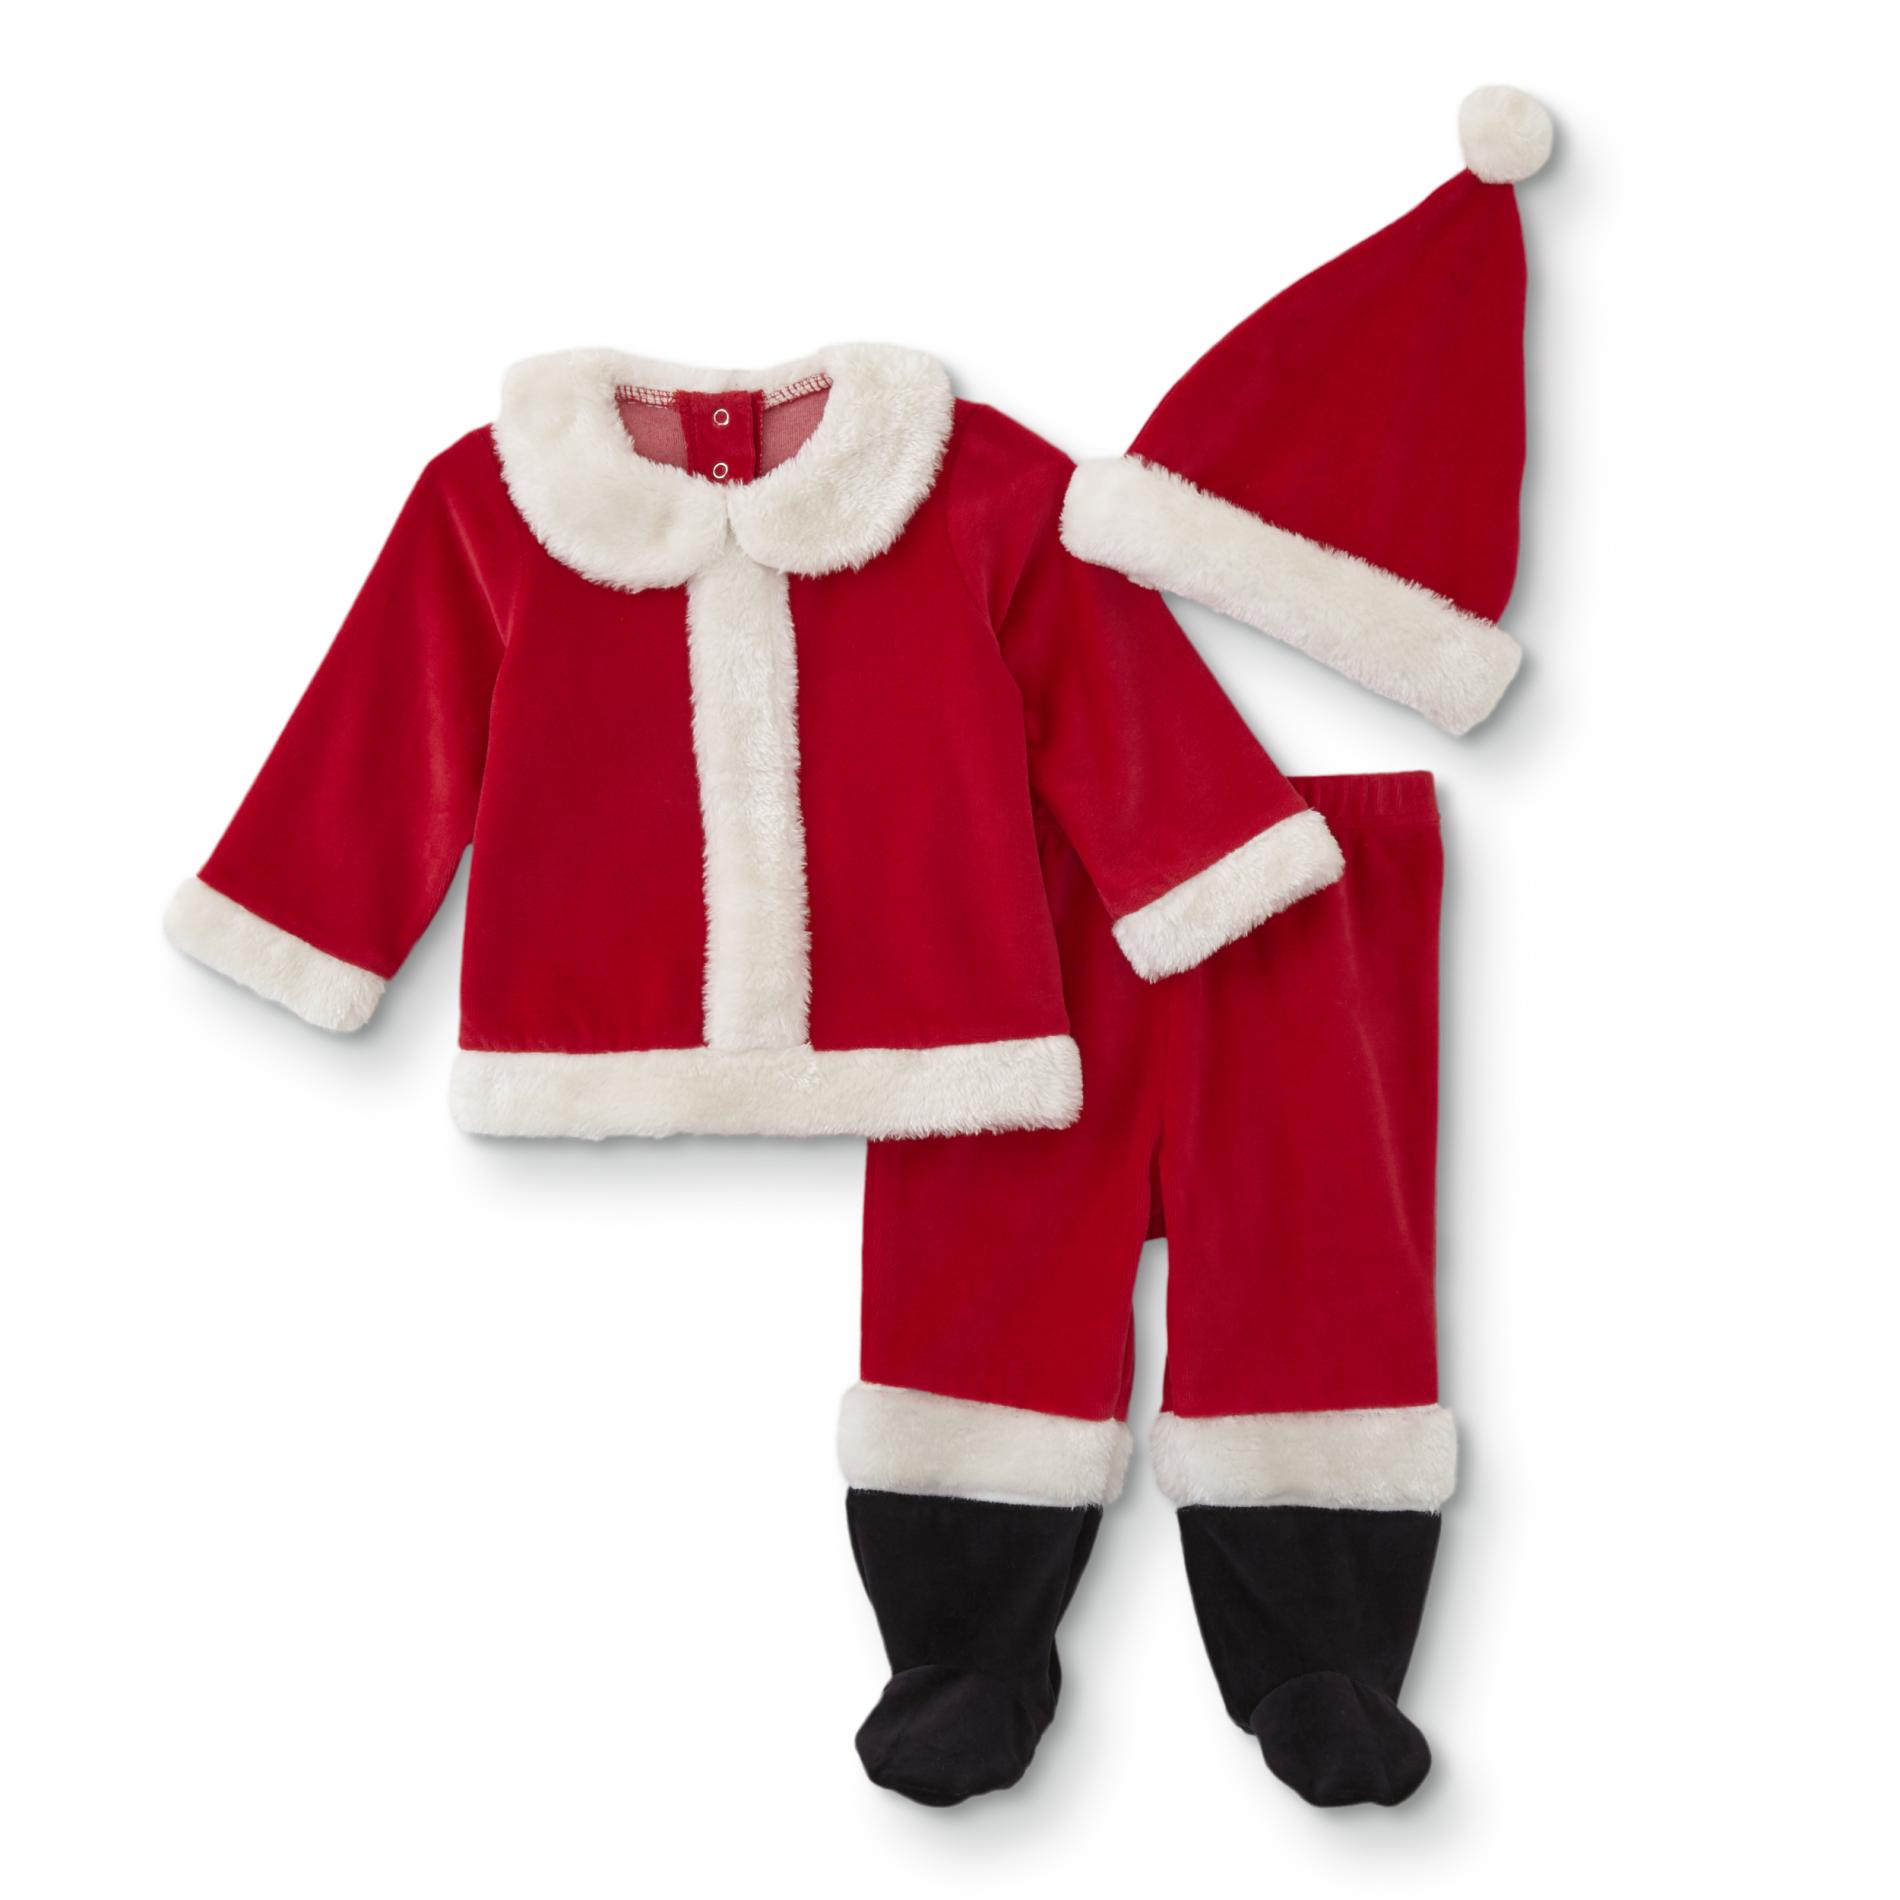 Little Wonders Infants' 3-Piece Santa Claus Suit